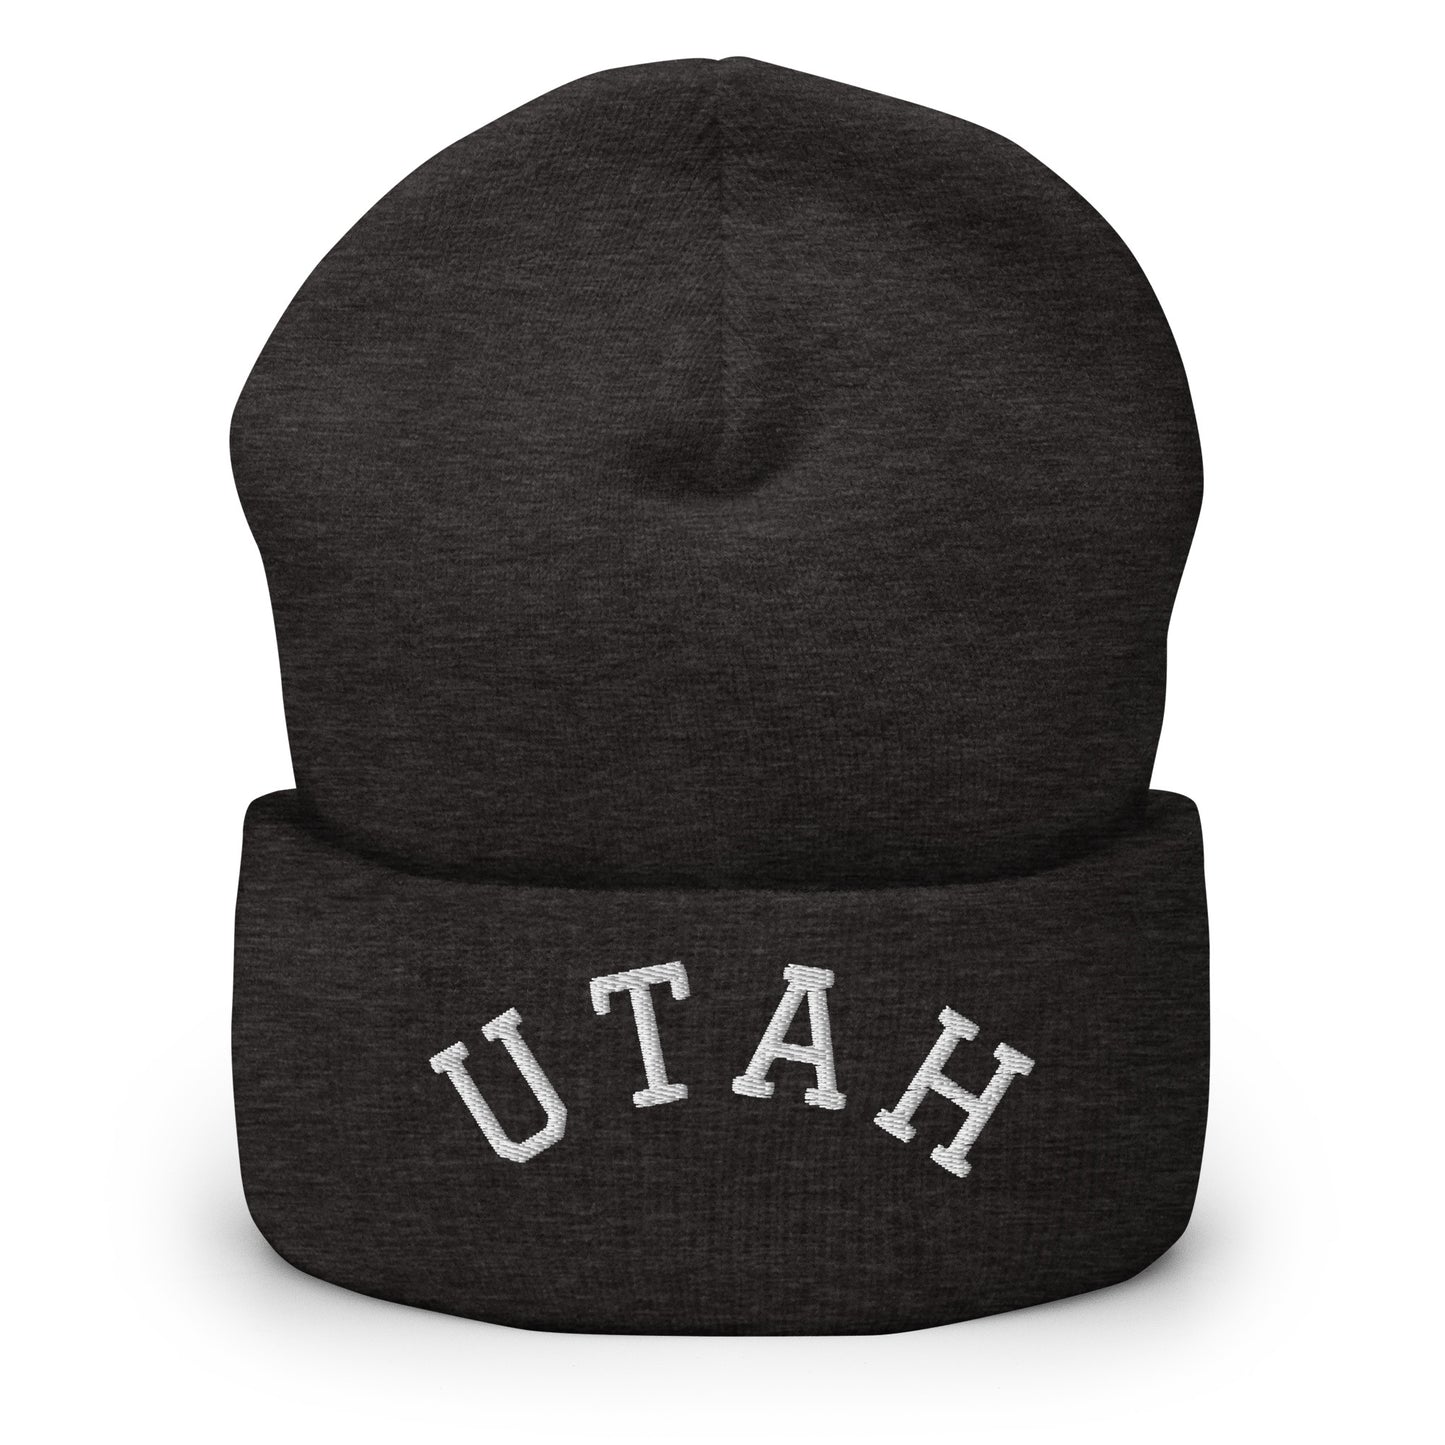 Utah Arch Cuffed Beanie Hat